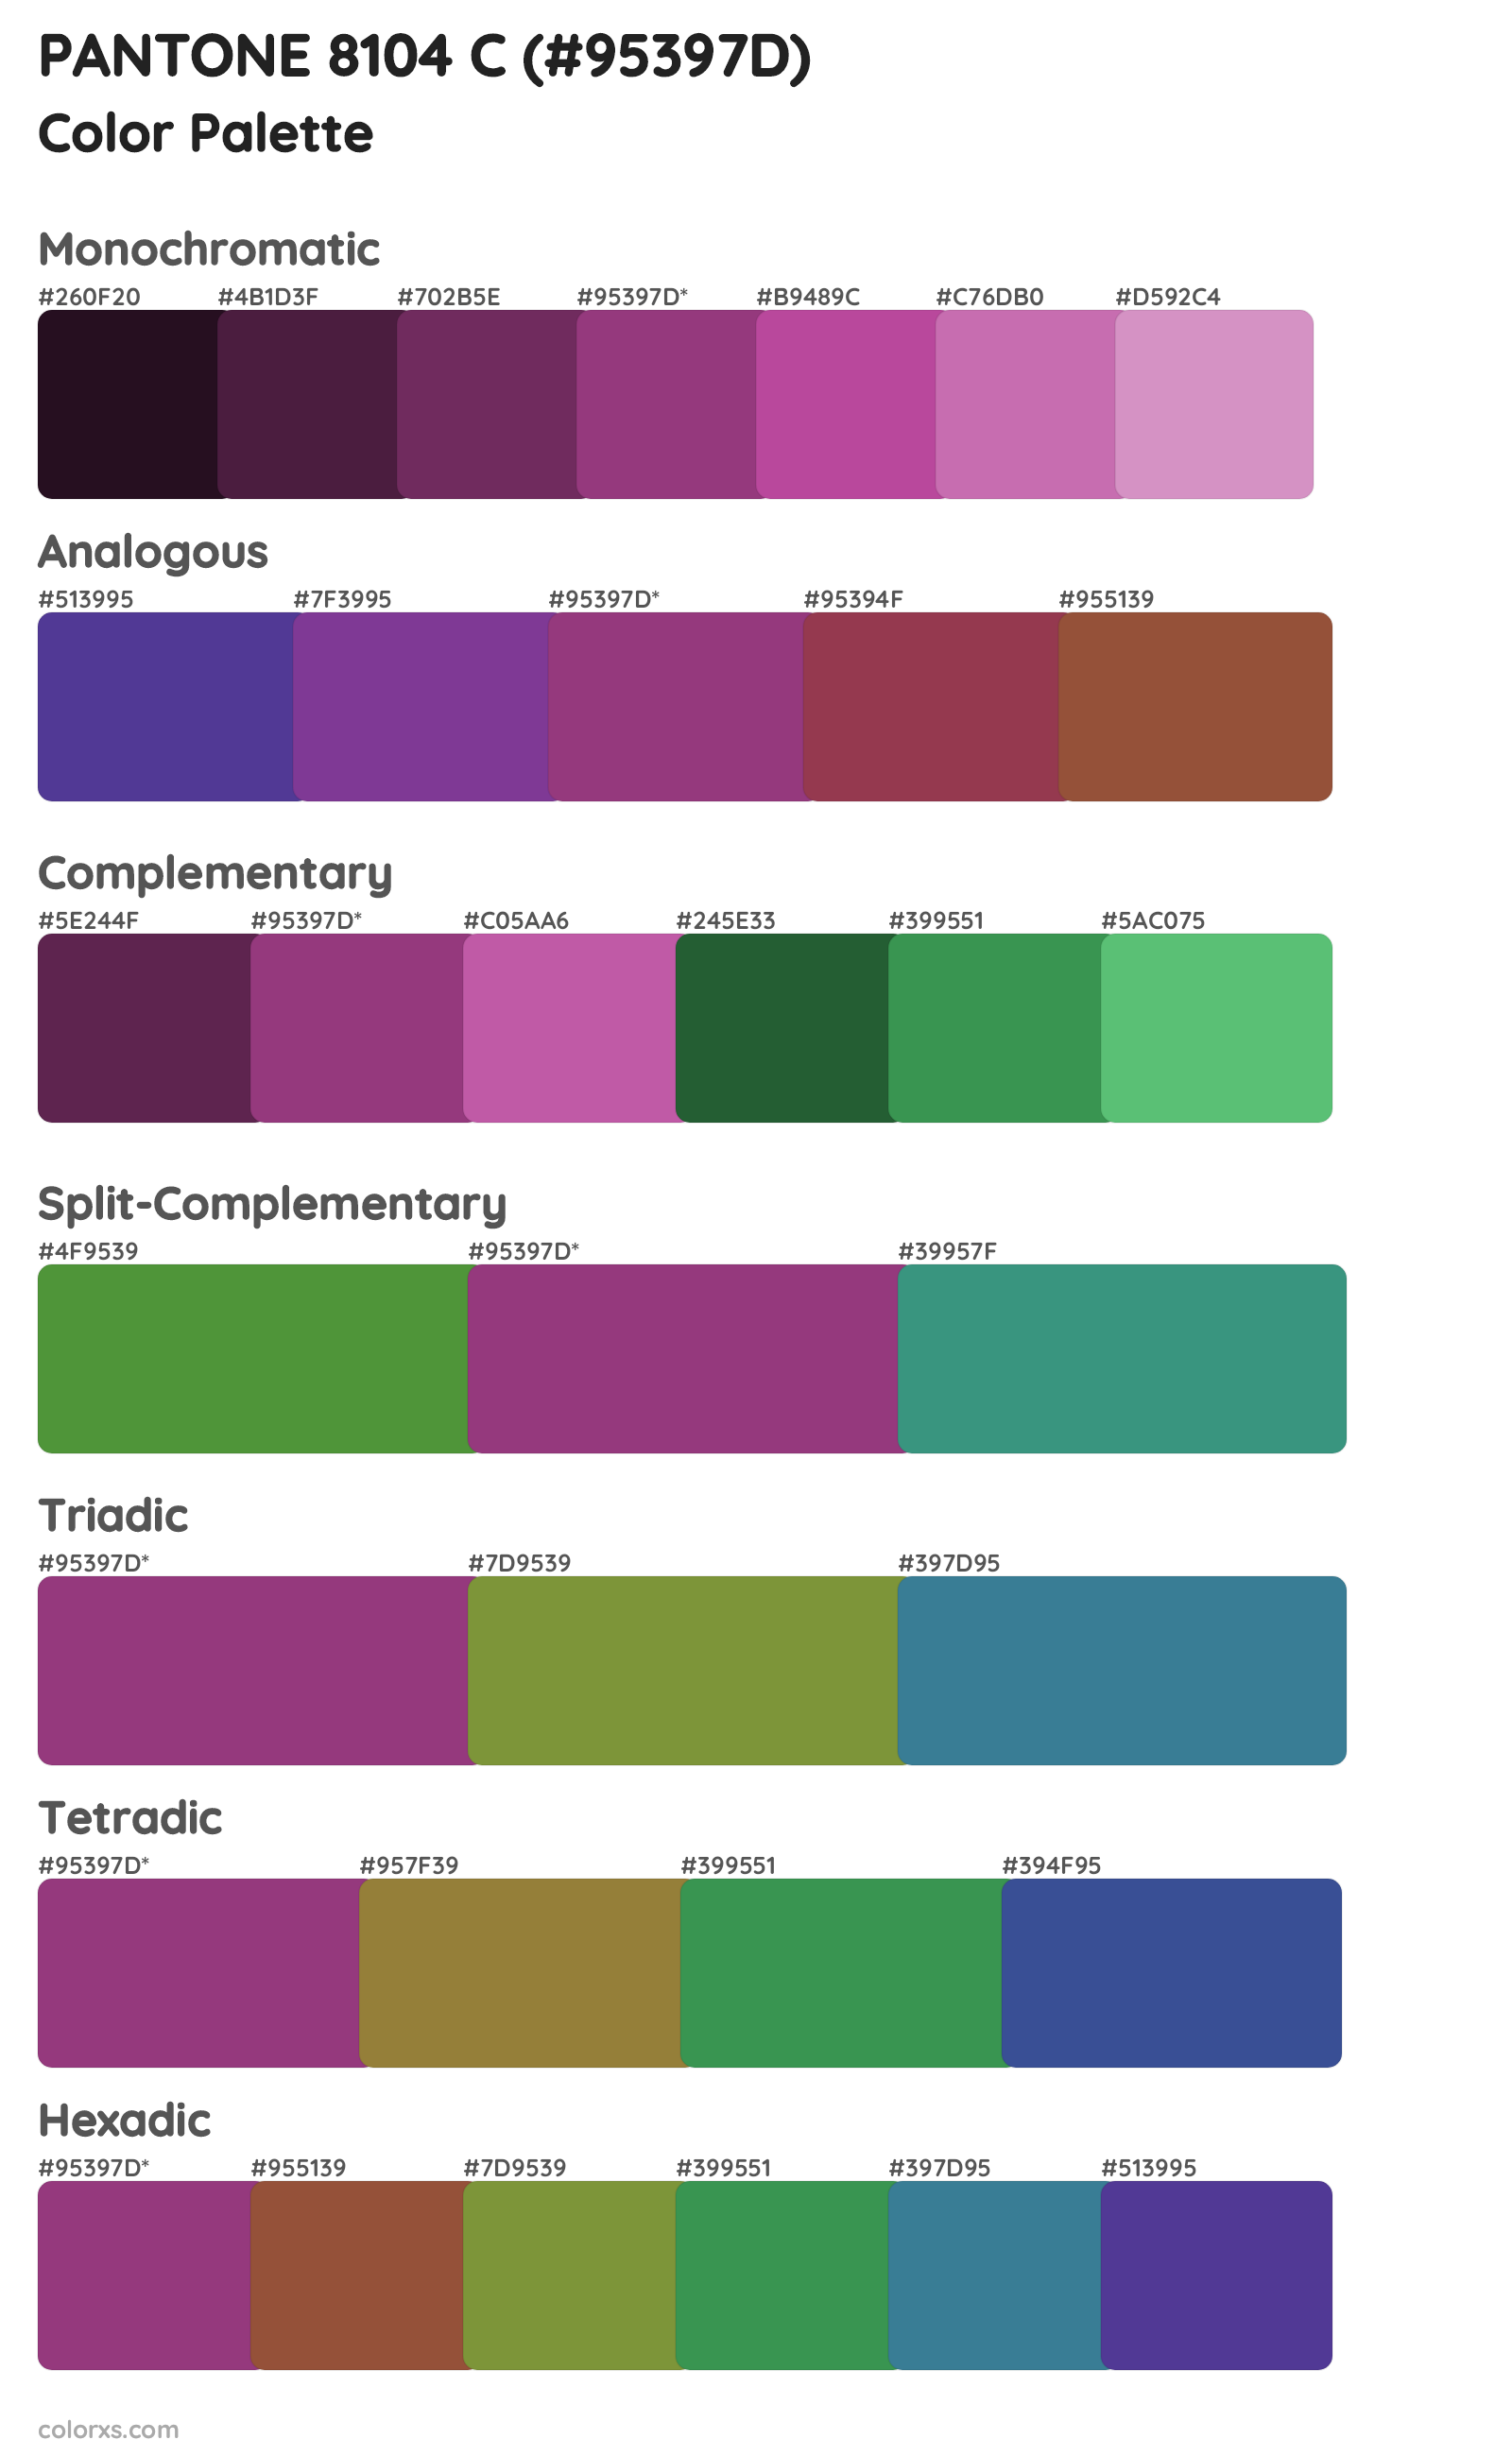 PANTONE 8104 C Color Scheme Palettes